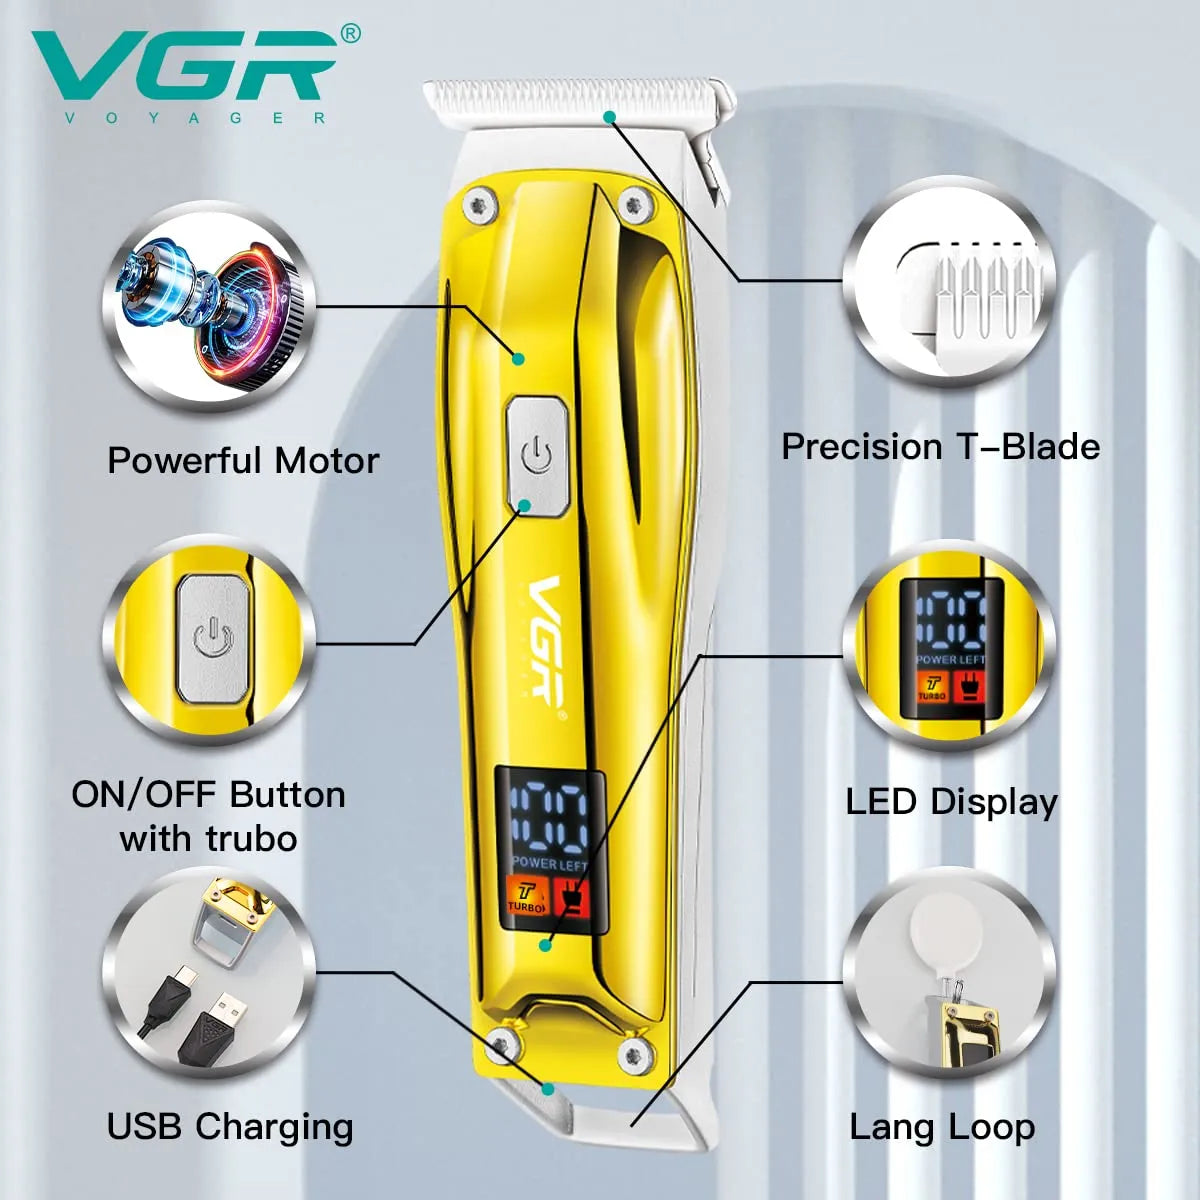 VGR, VGRindia, VGRofficial, VGR V-956